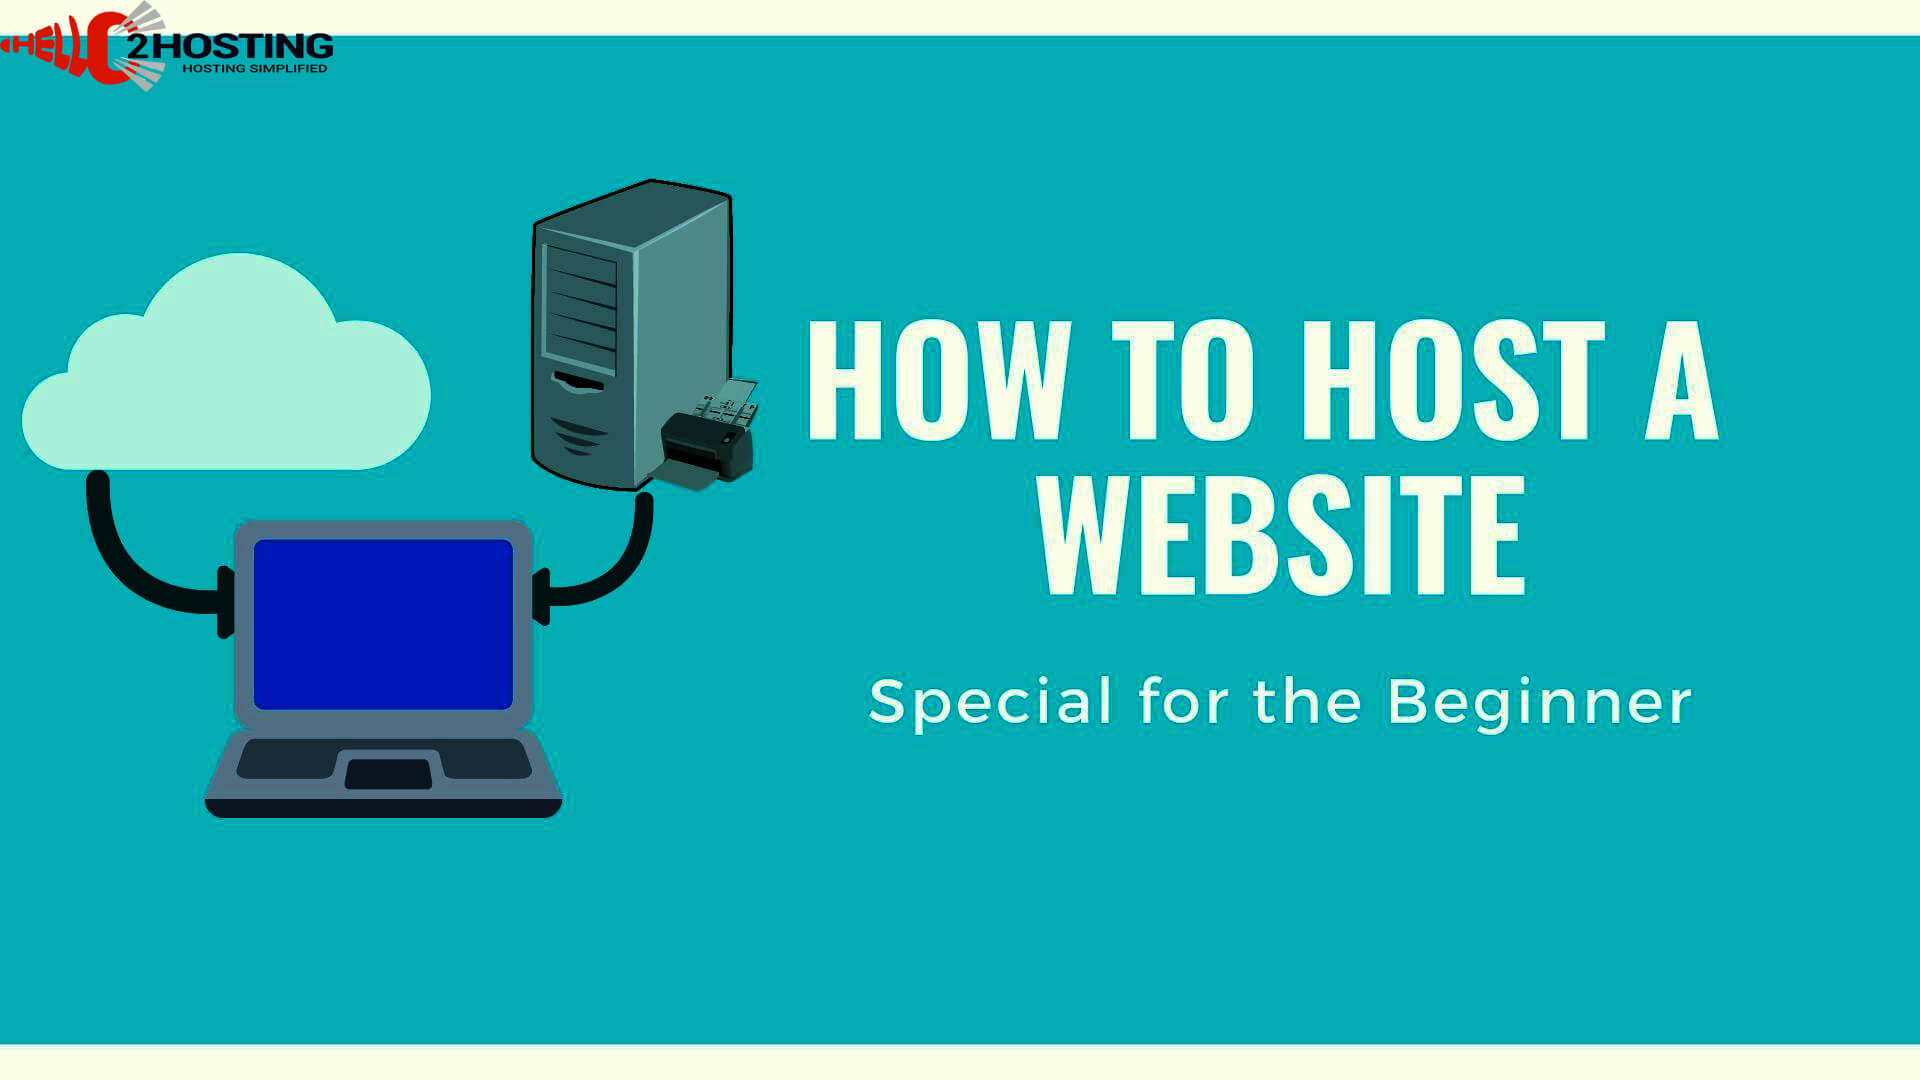 Host a website